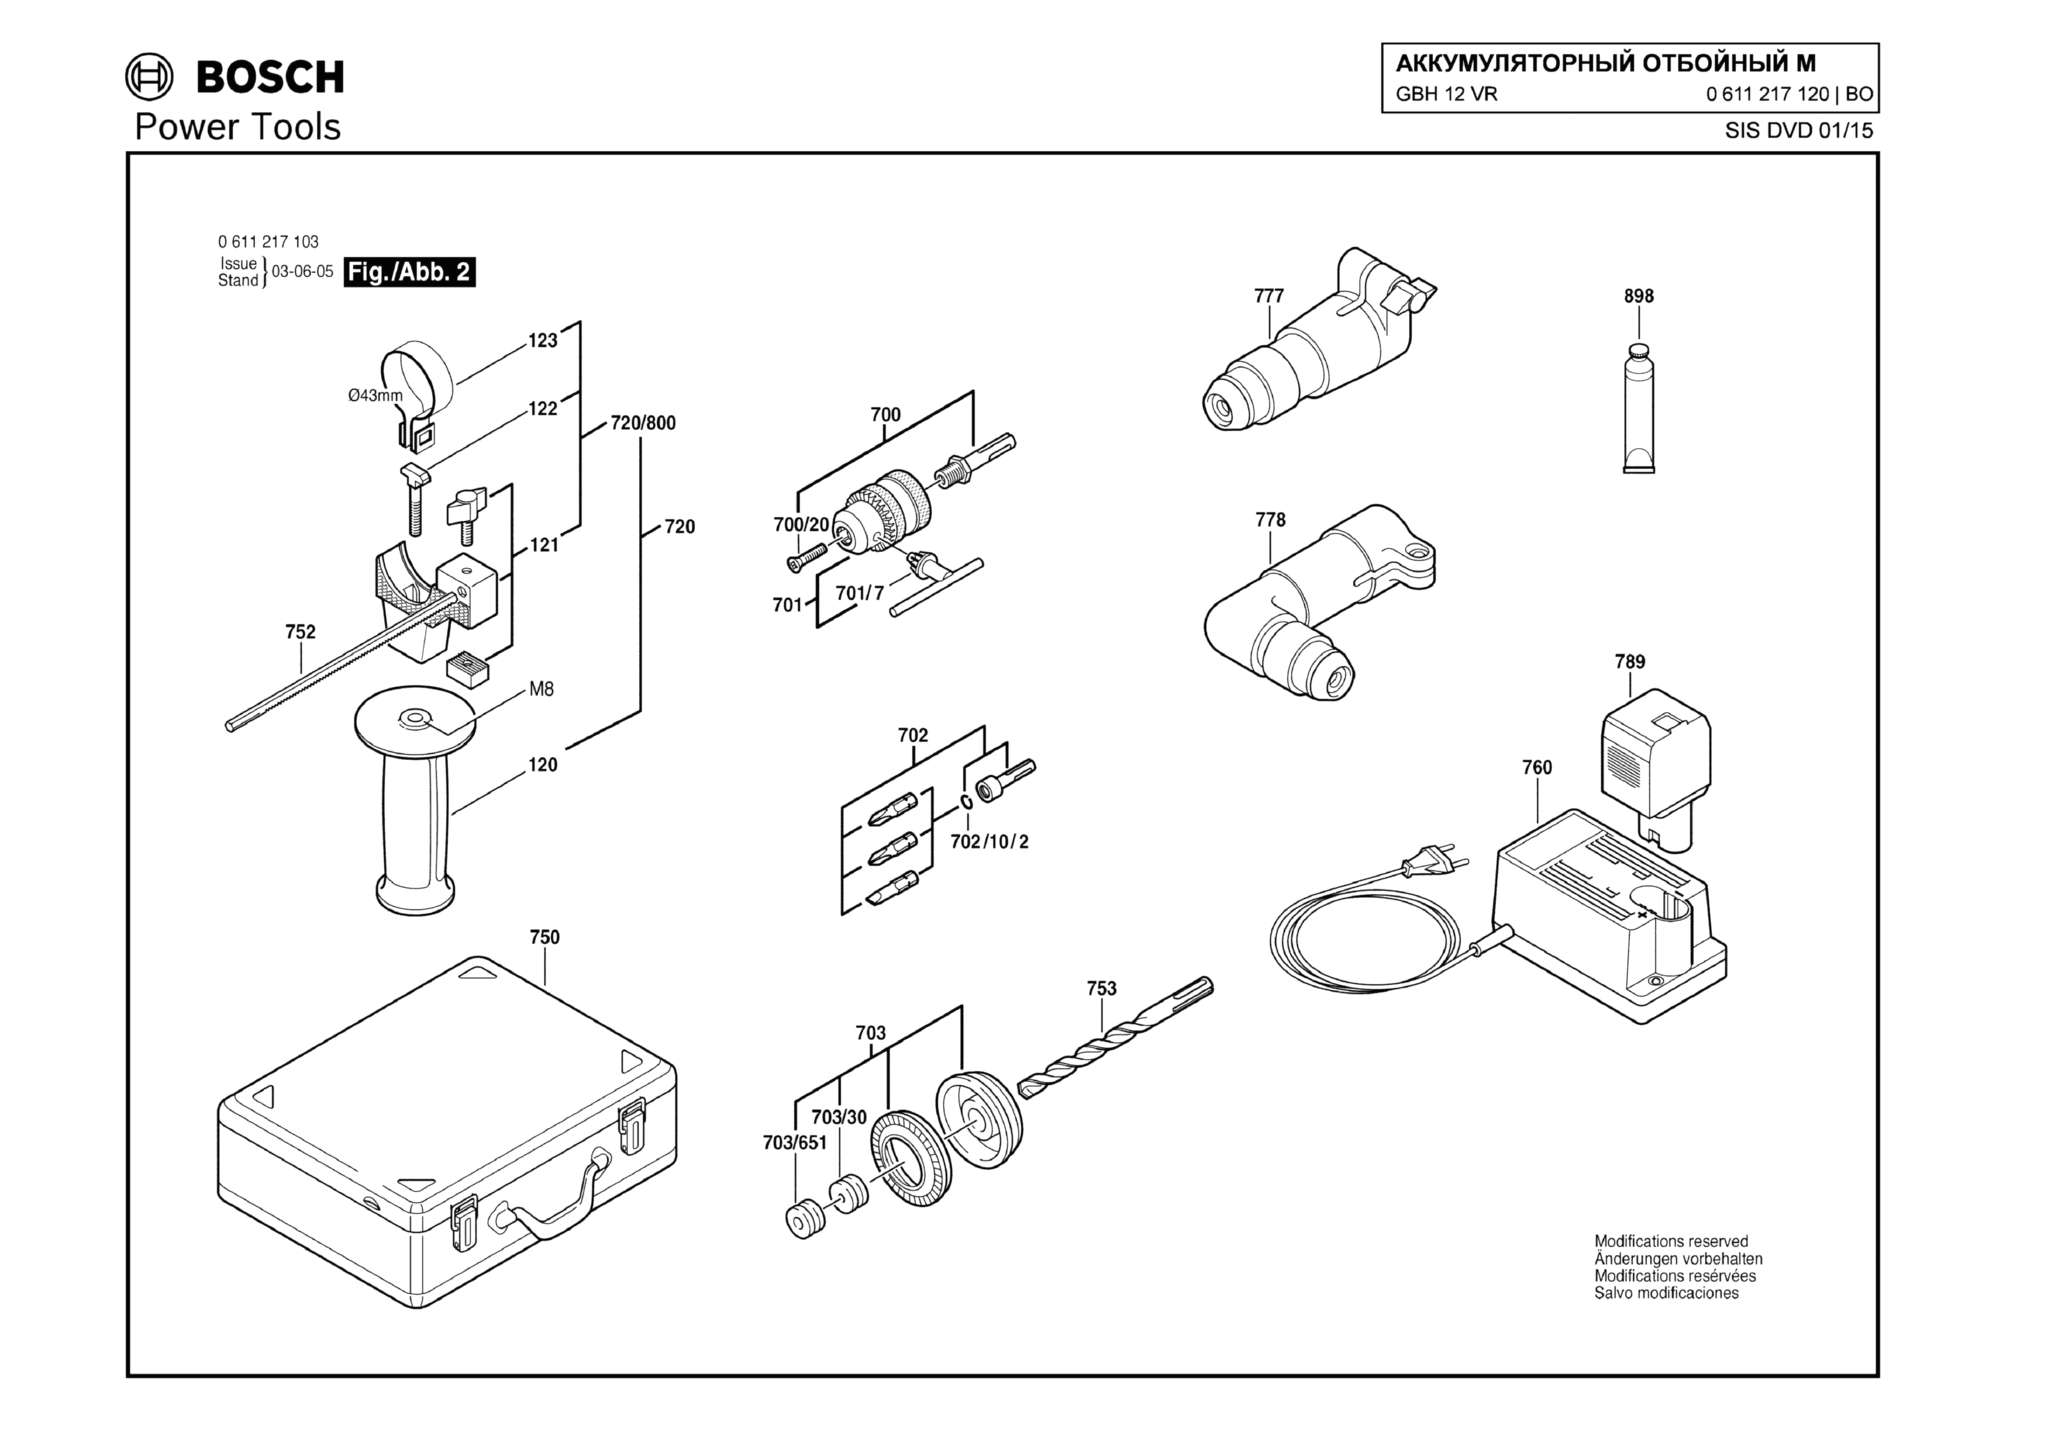 Запчасти, схема и деталировка Bosch GBH 12 VR (ТИП 0611217120) (ЧАСТЬ 2)